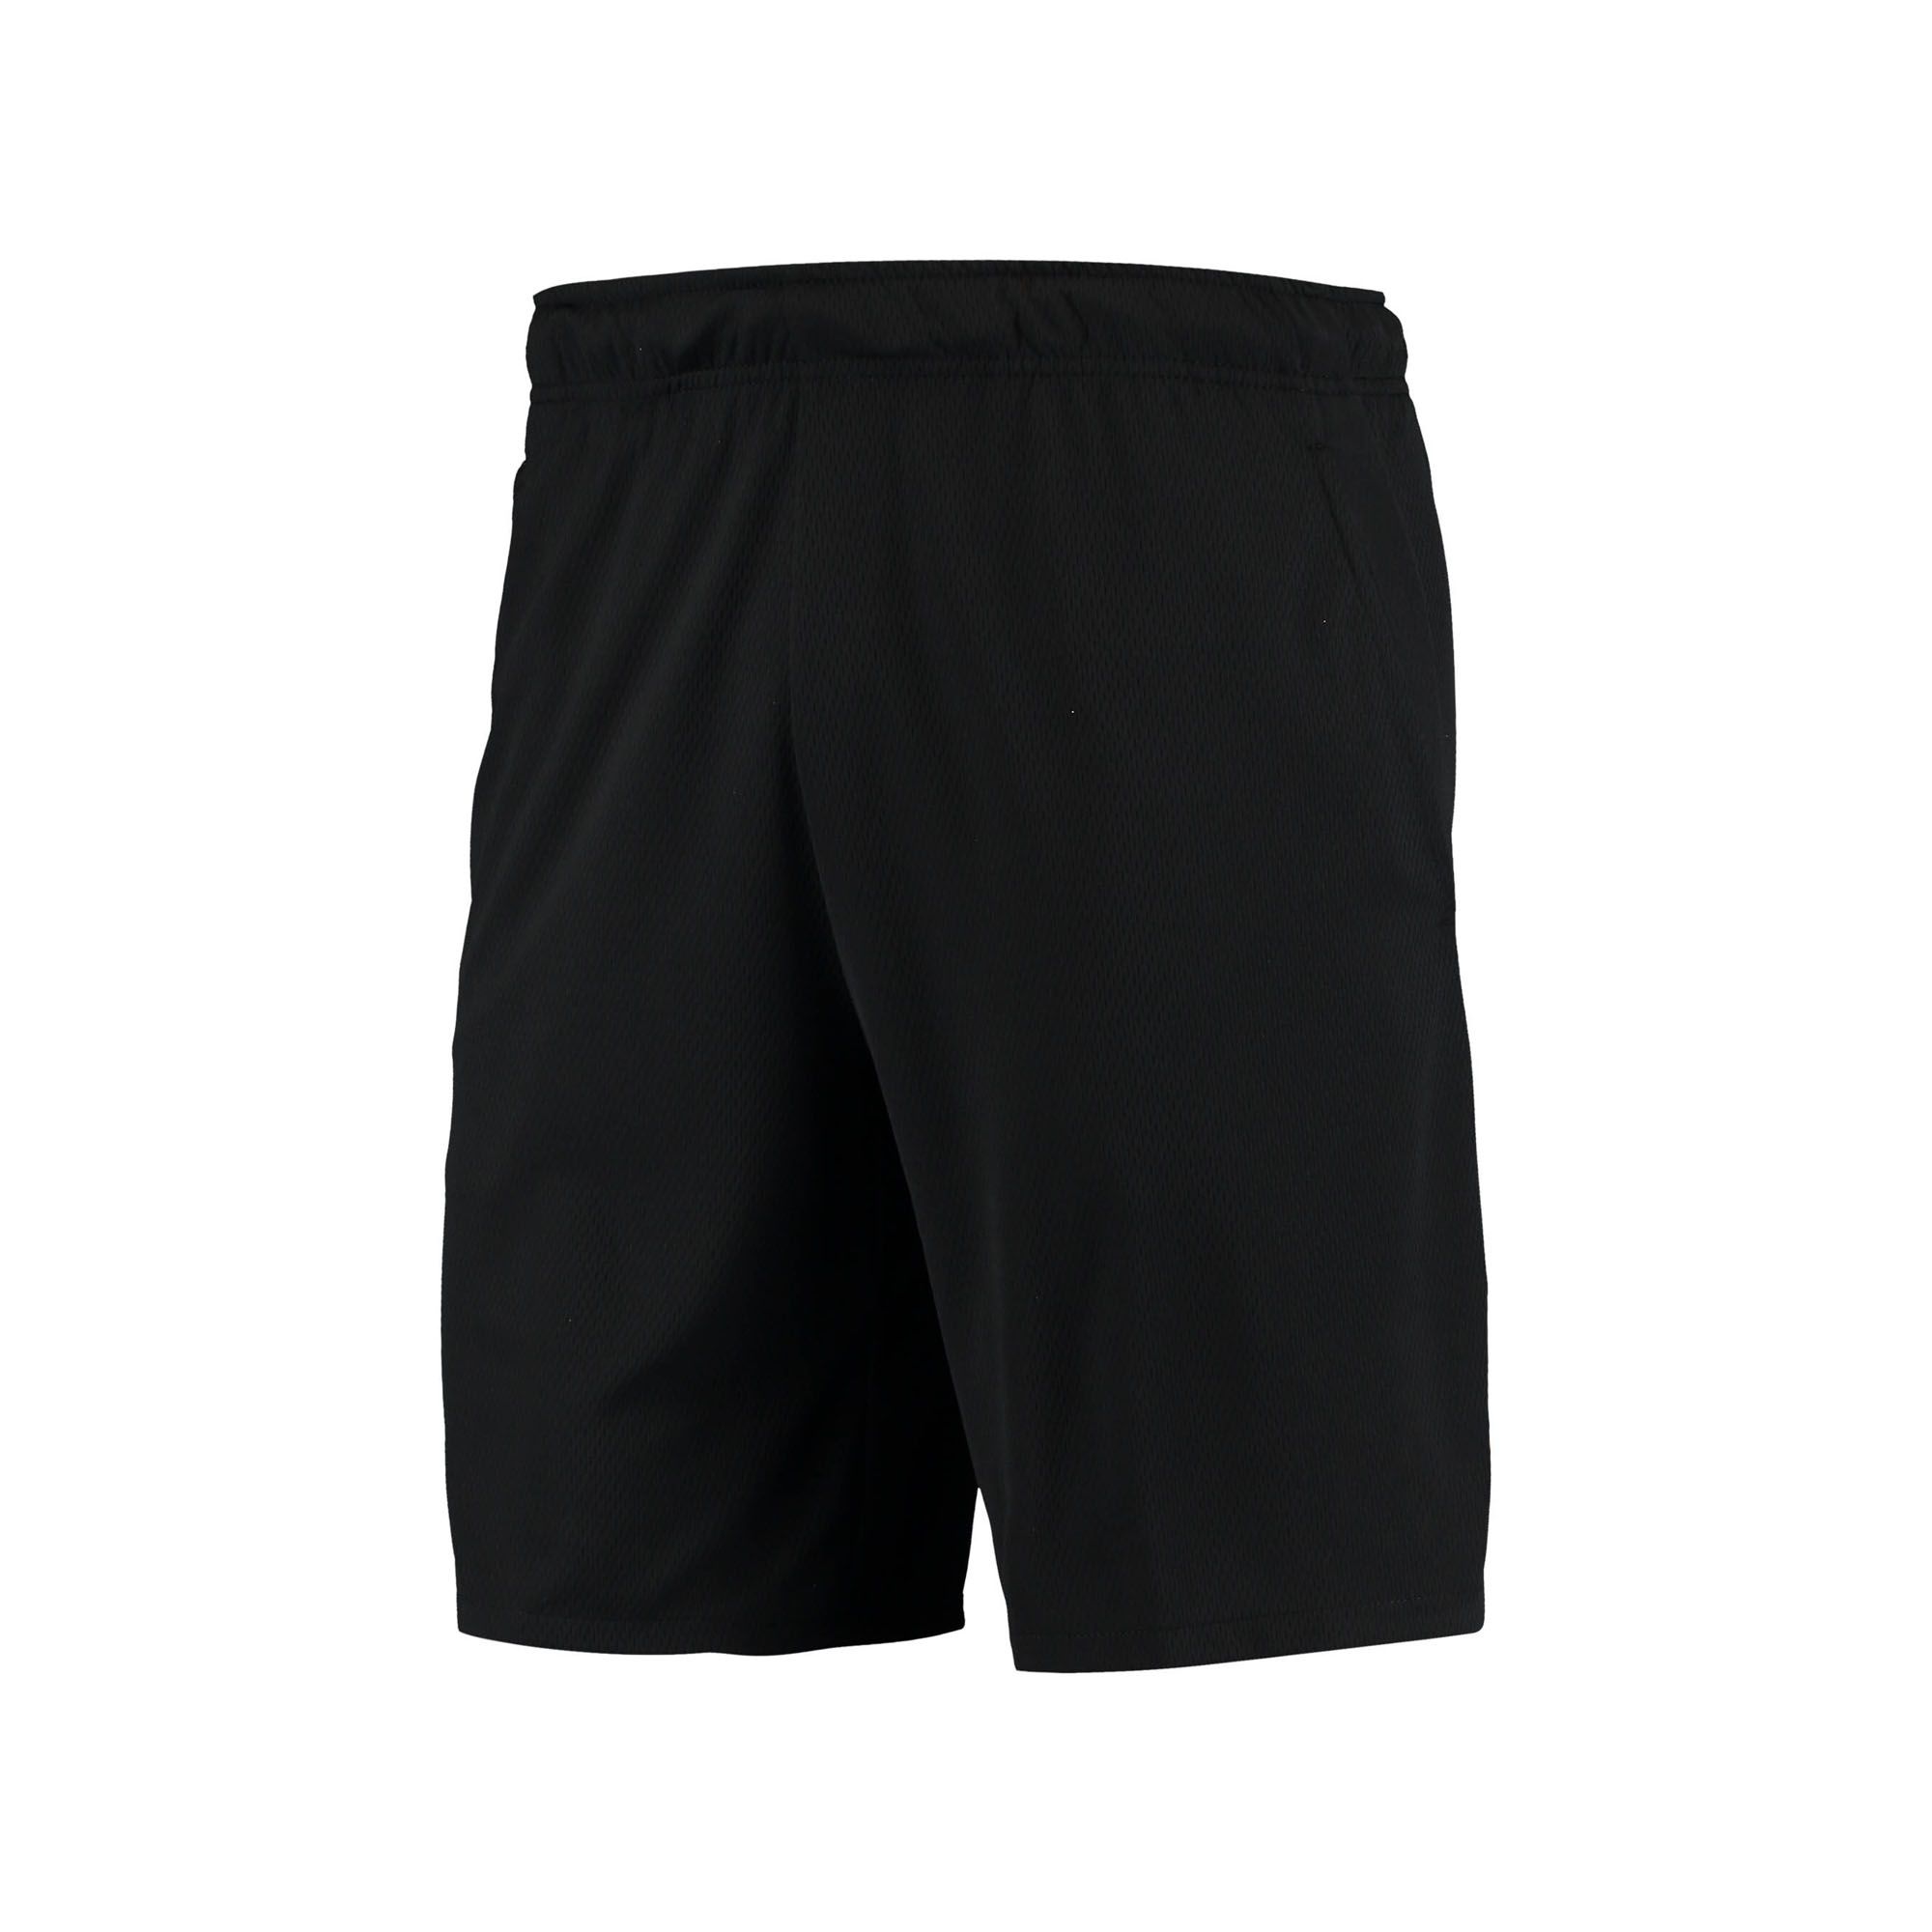  Nike Dri-FIT Hype Performance Shorts - Black 